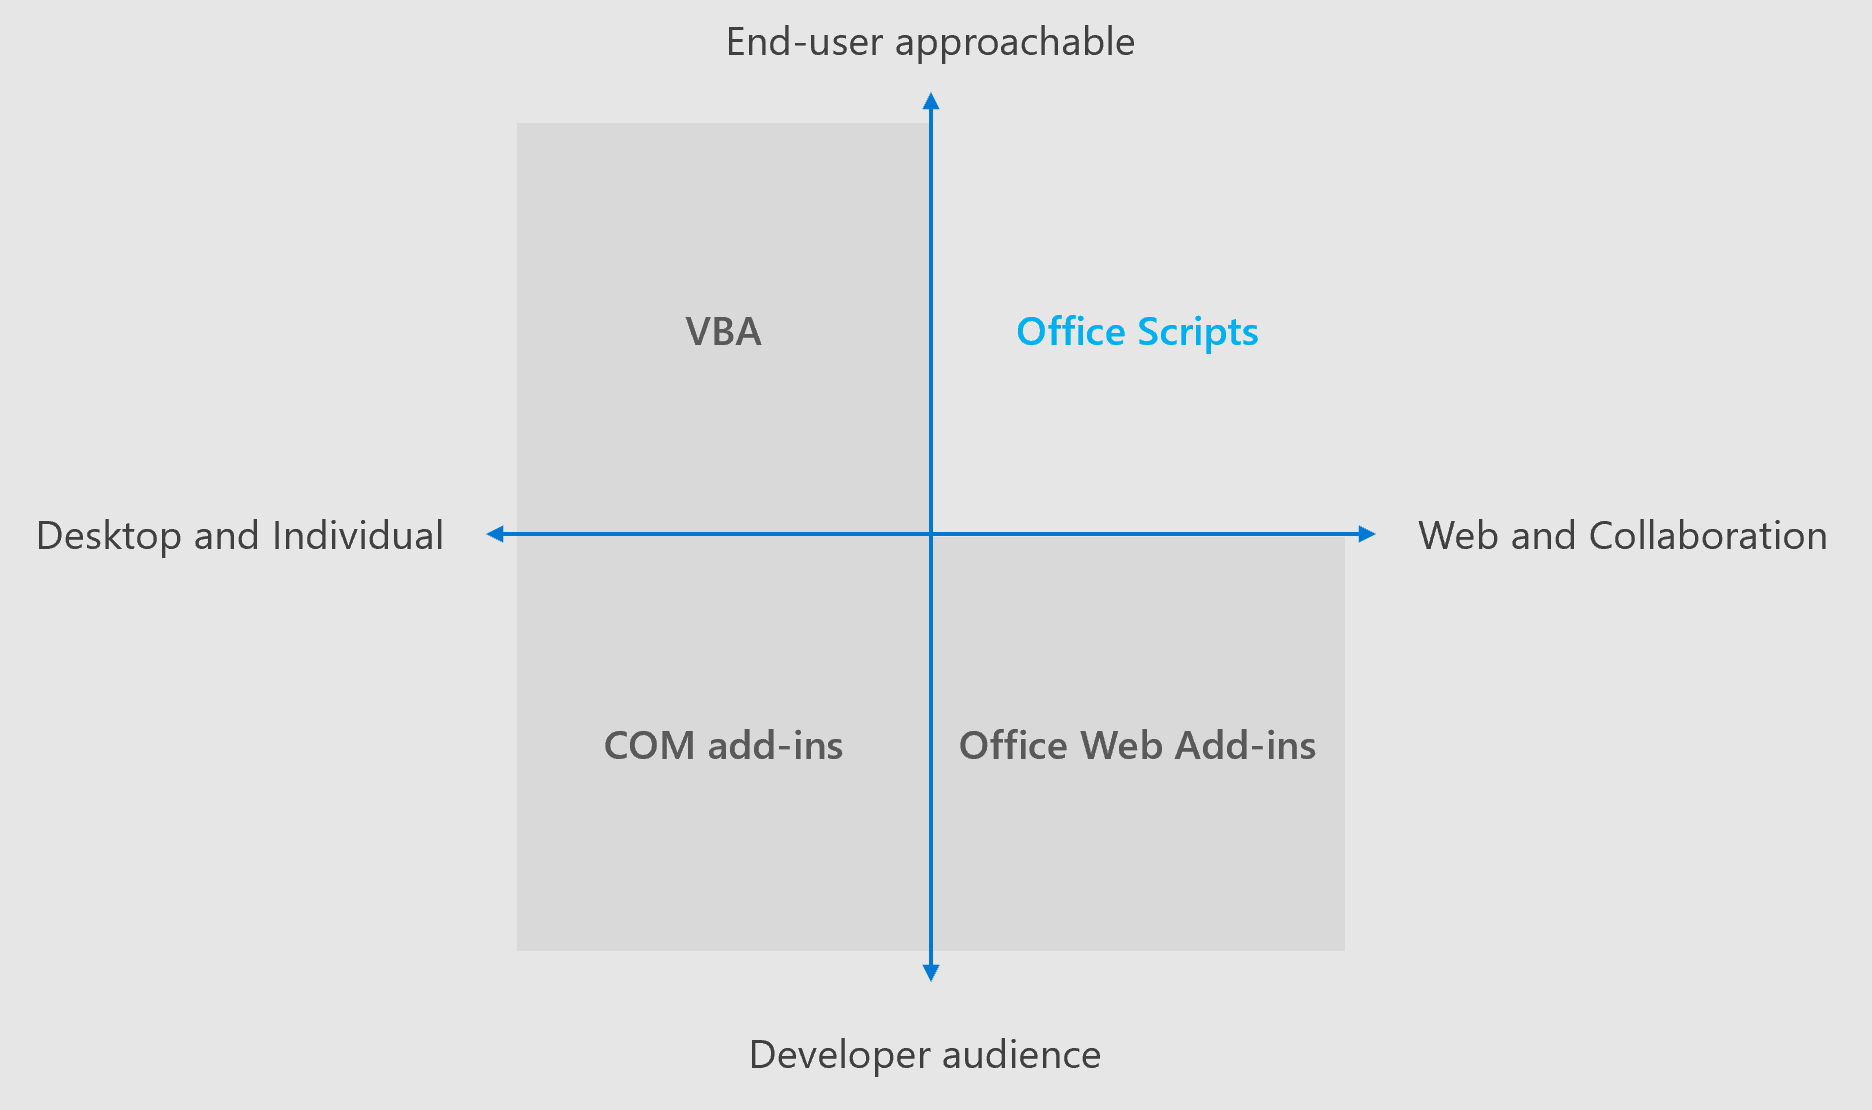 Diagramme à quatre quadrants montrant les domaines d’intérêt pour différentes solutions d’extensibilité Office. Les scripts Office et les macros VBA sont conçus pour aider les utilisateurs finaux à créer des solutions. Les scripts Office sont conçus pour les expériences multiplateformes et la collaboration, tandis que VBA est destiné au bureau.